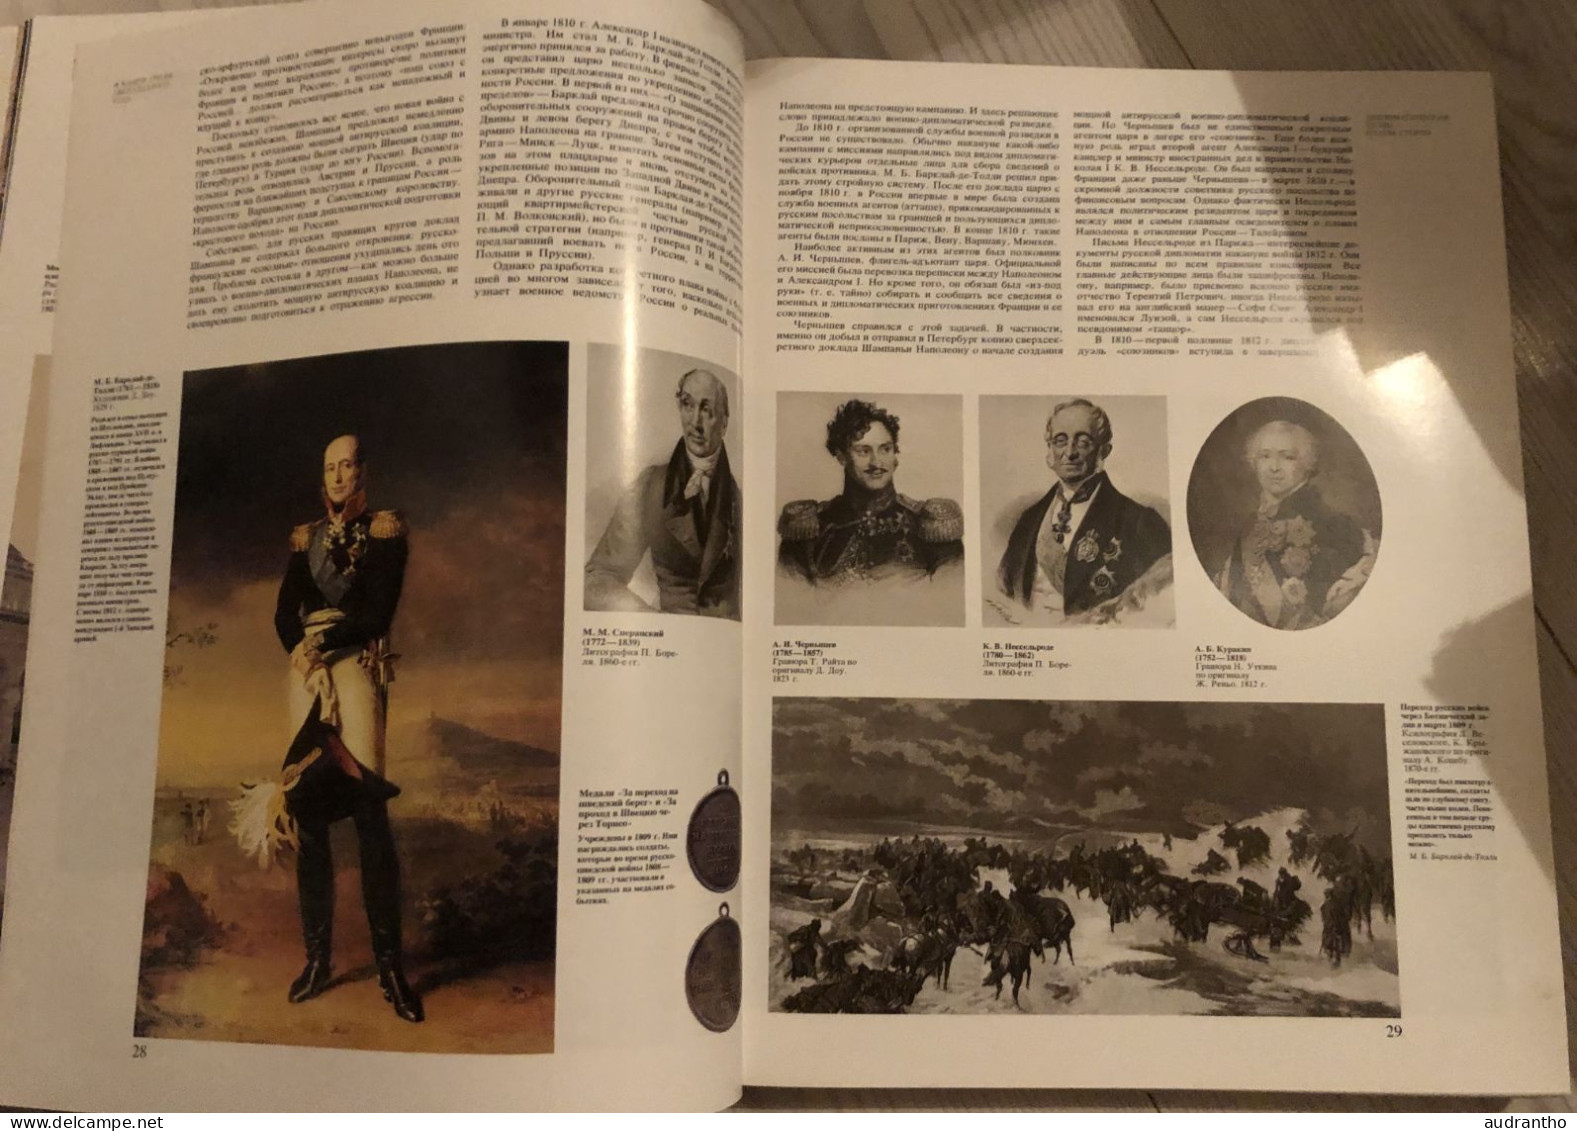 livre en russe BORODINO 1812 - mockba 1987 - guerre patriotique de l'armée et peuple russe contre Napoléon